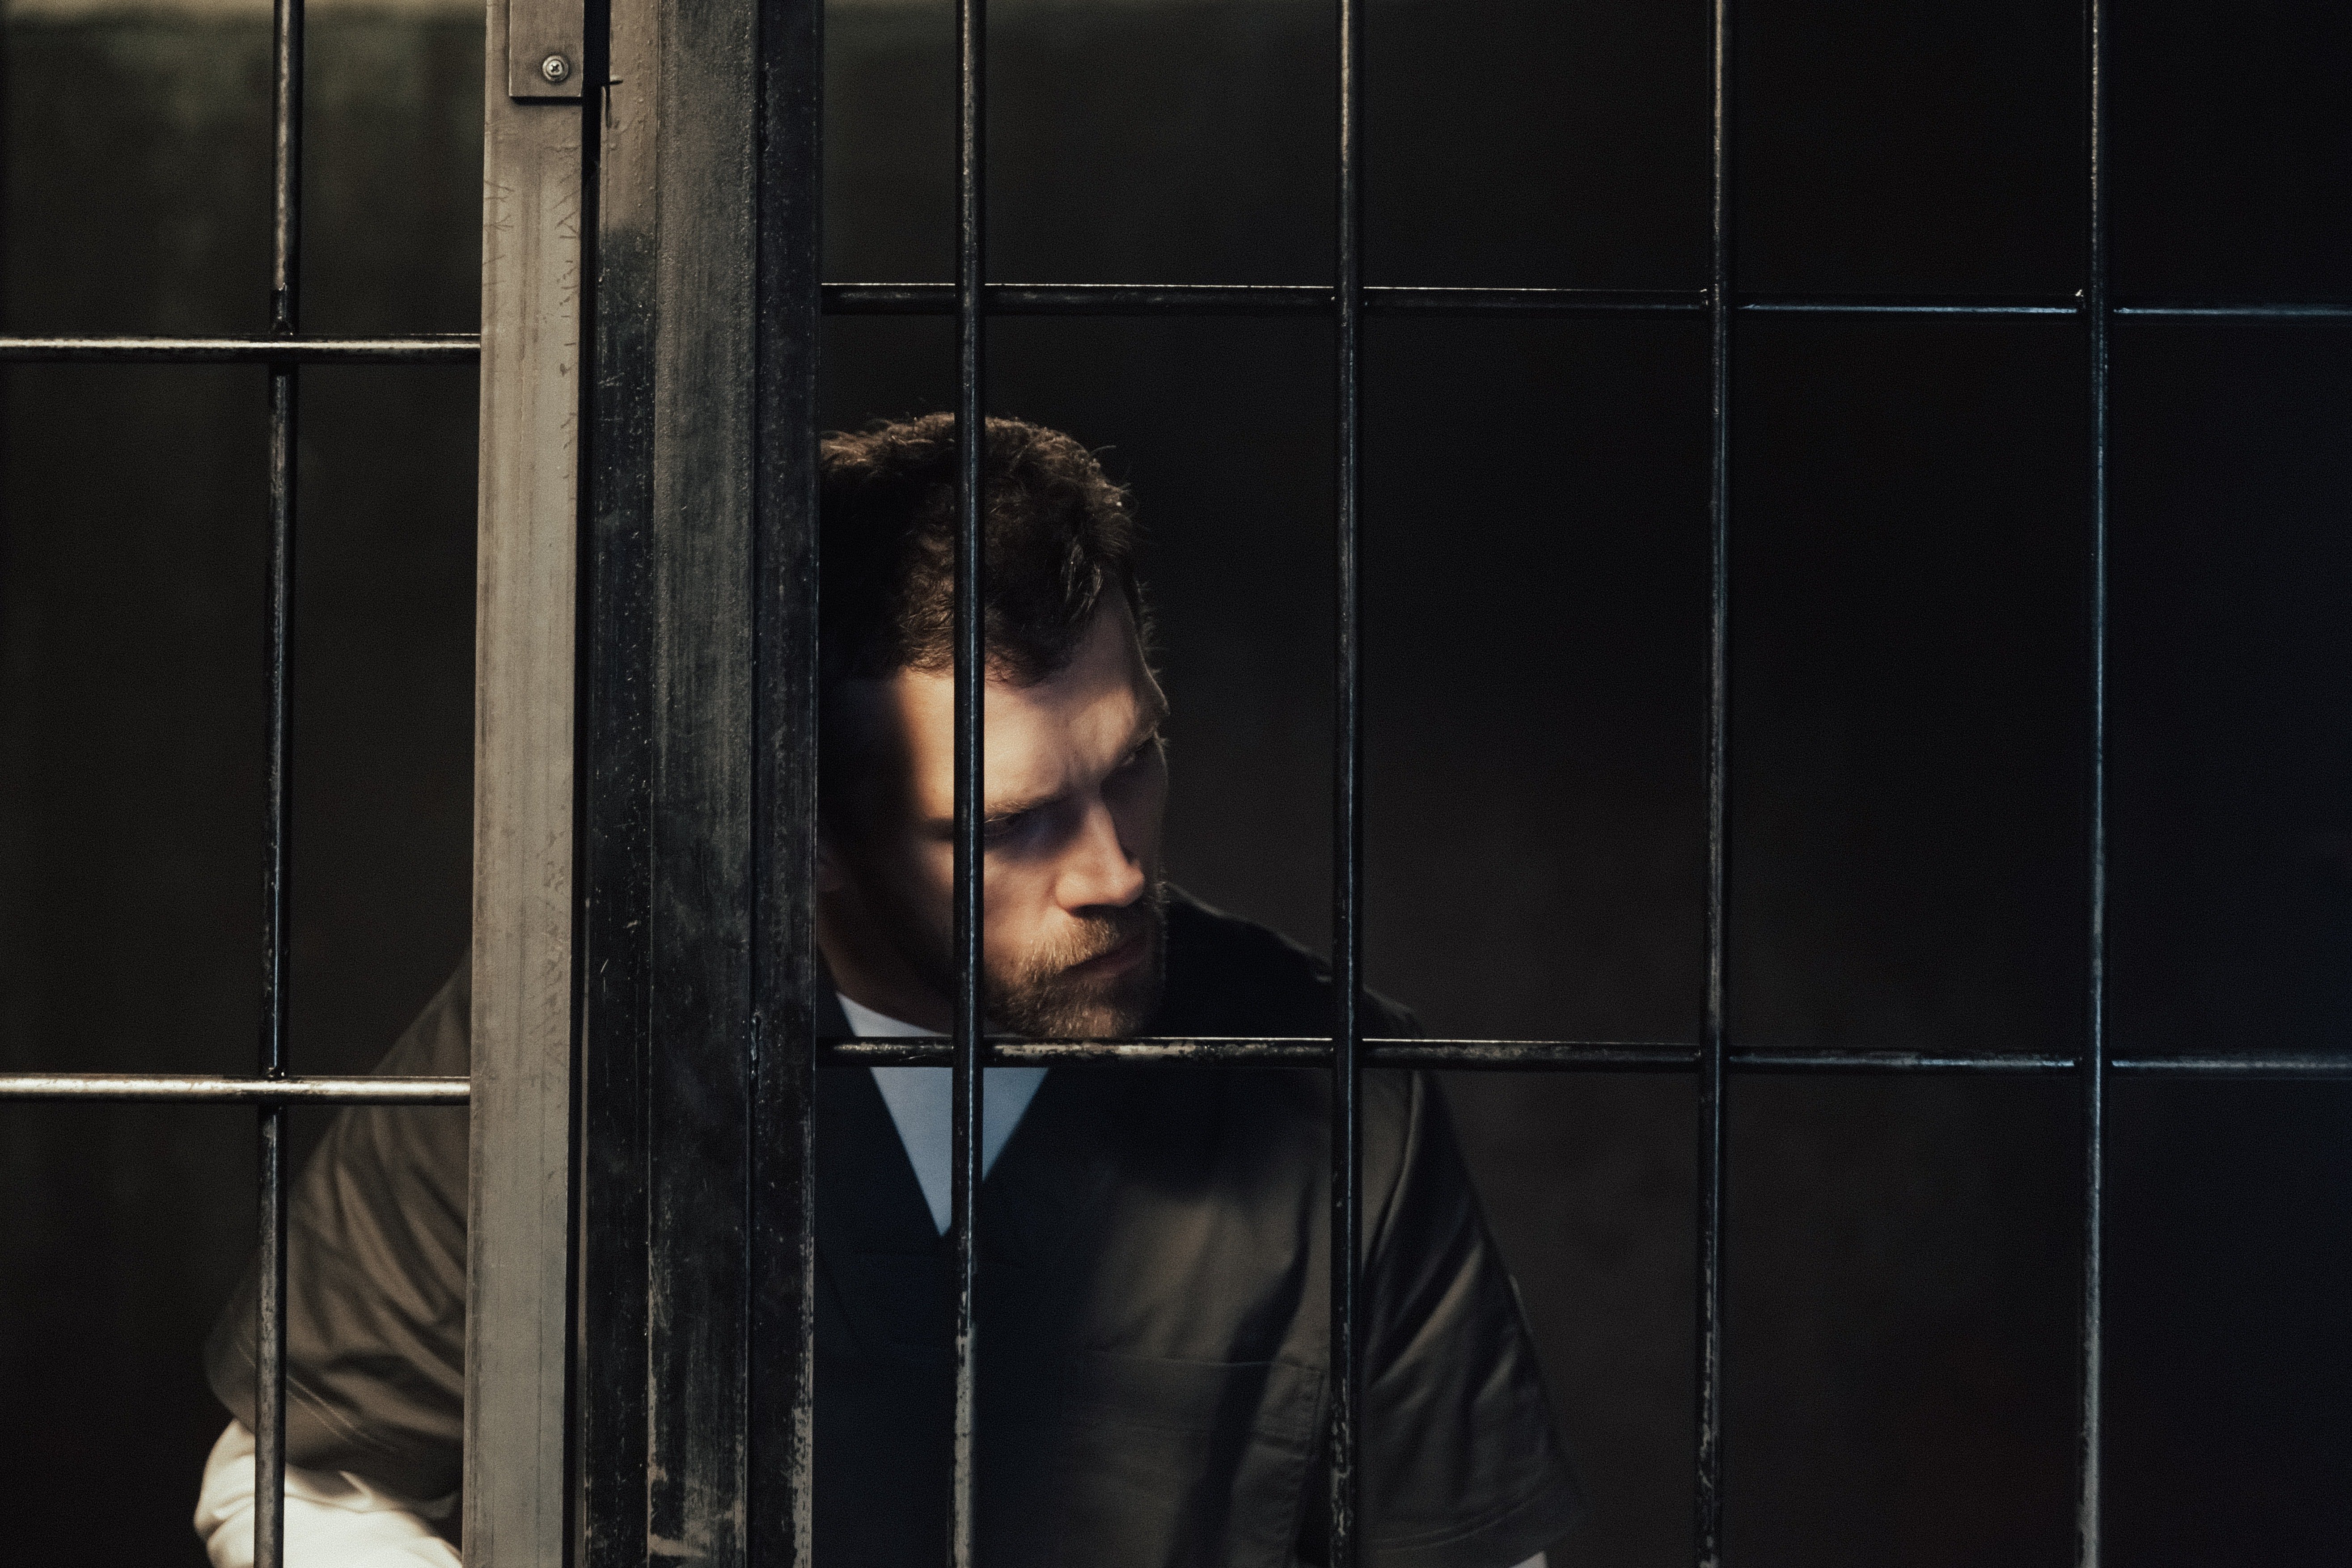 Un joven detenido en una celda. | Foto: Pexels